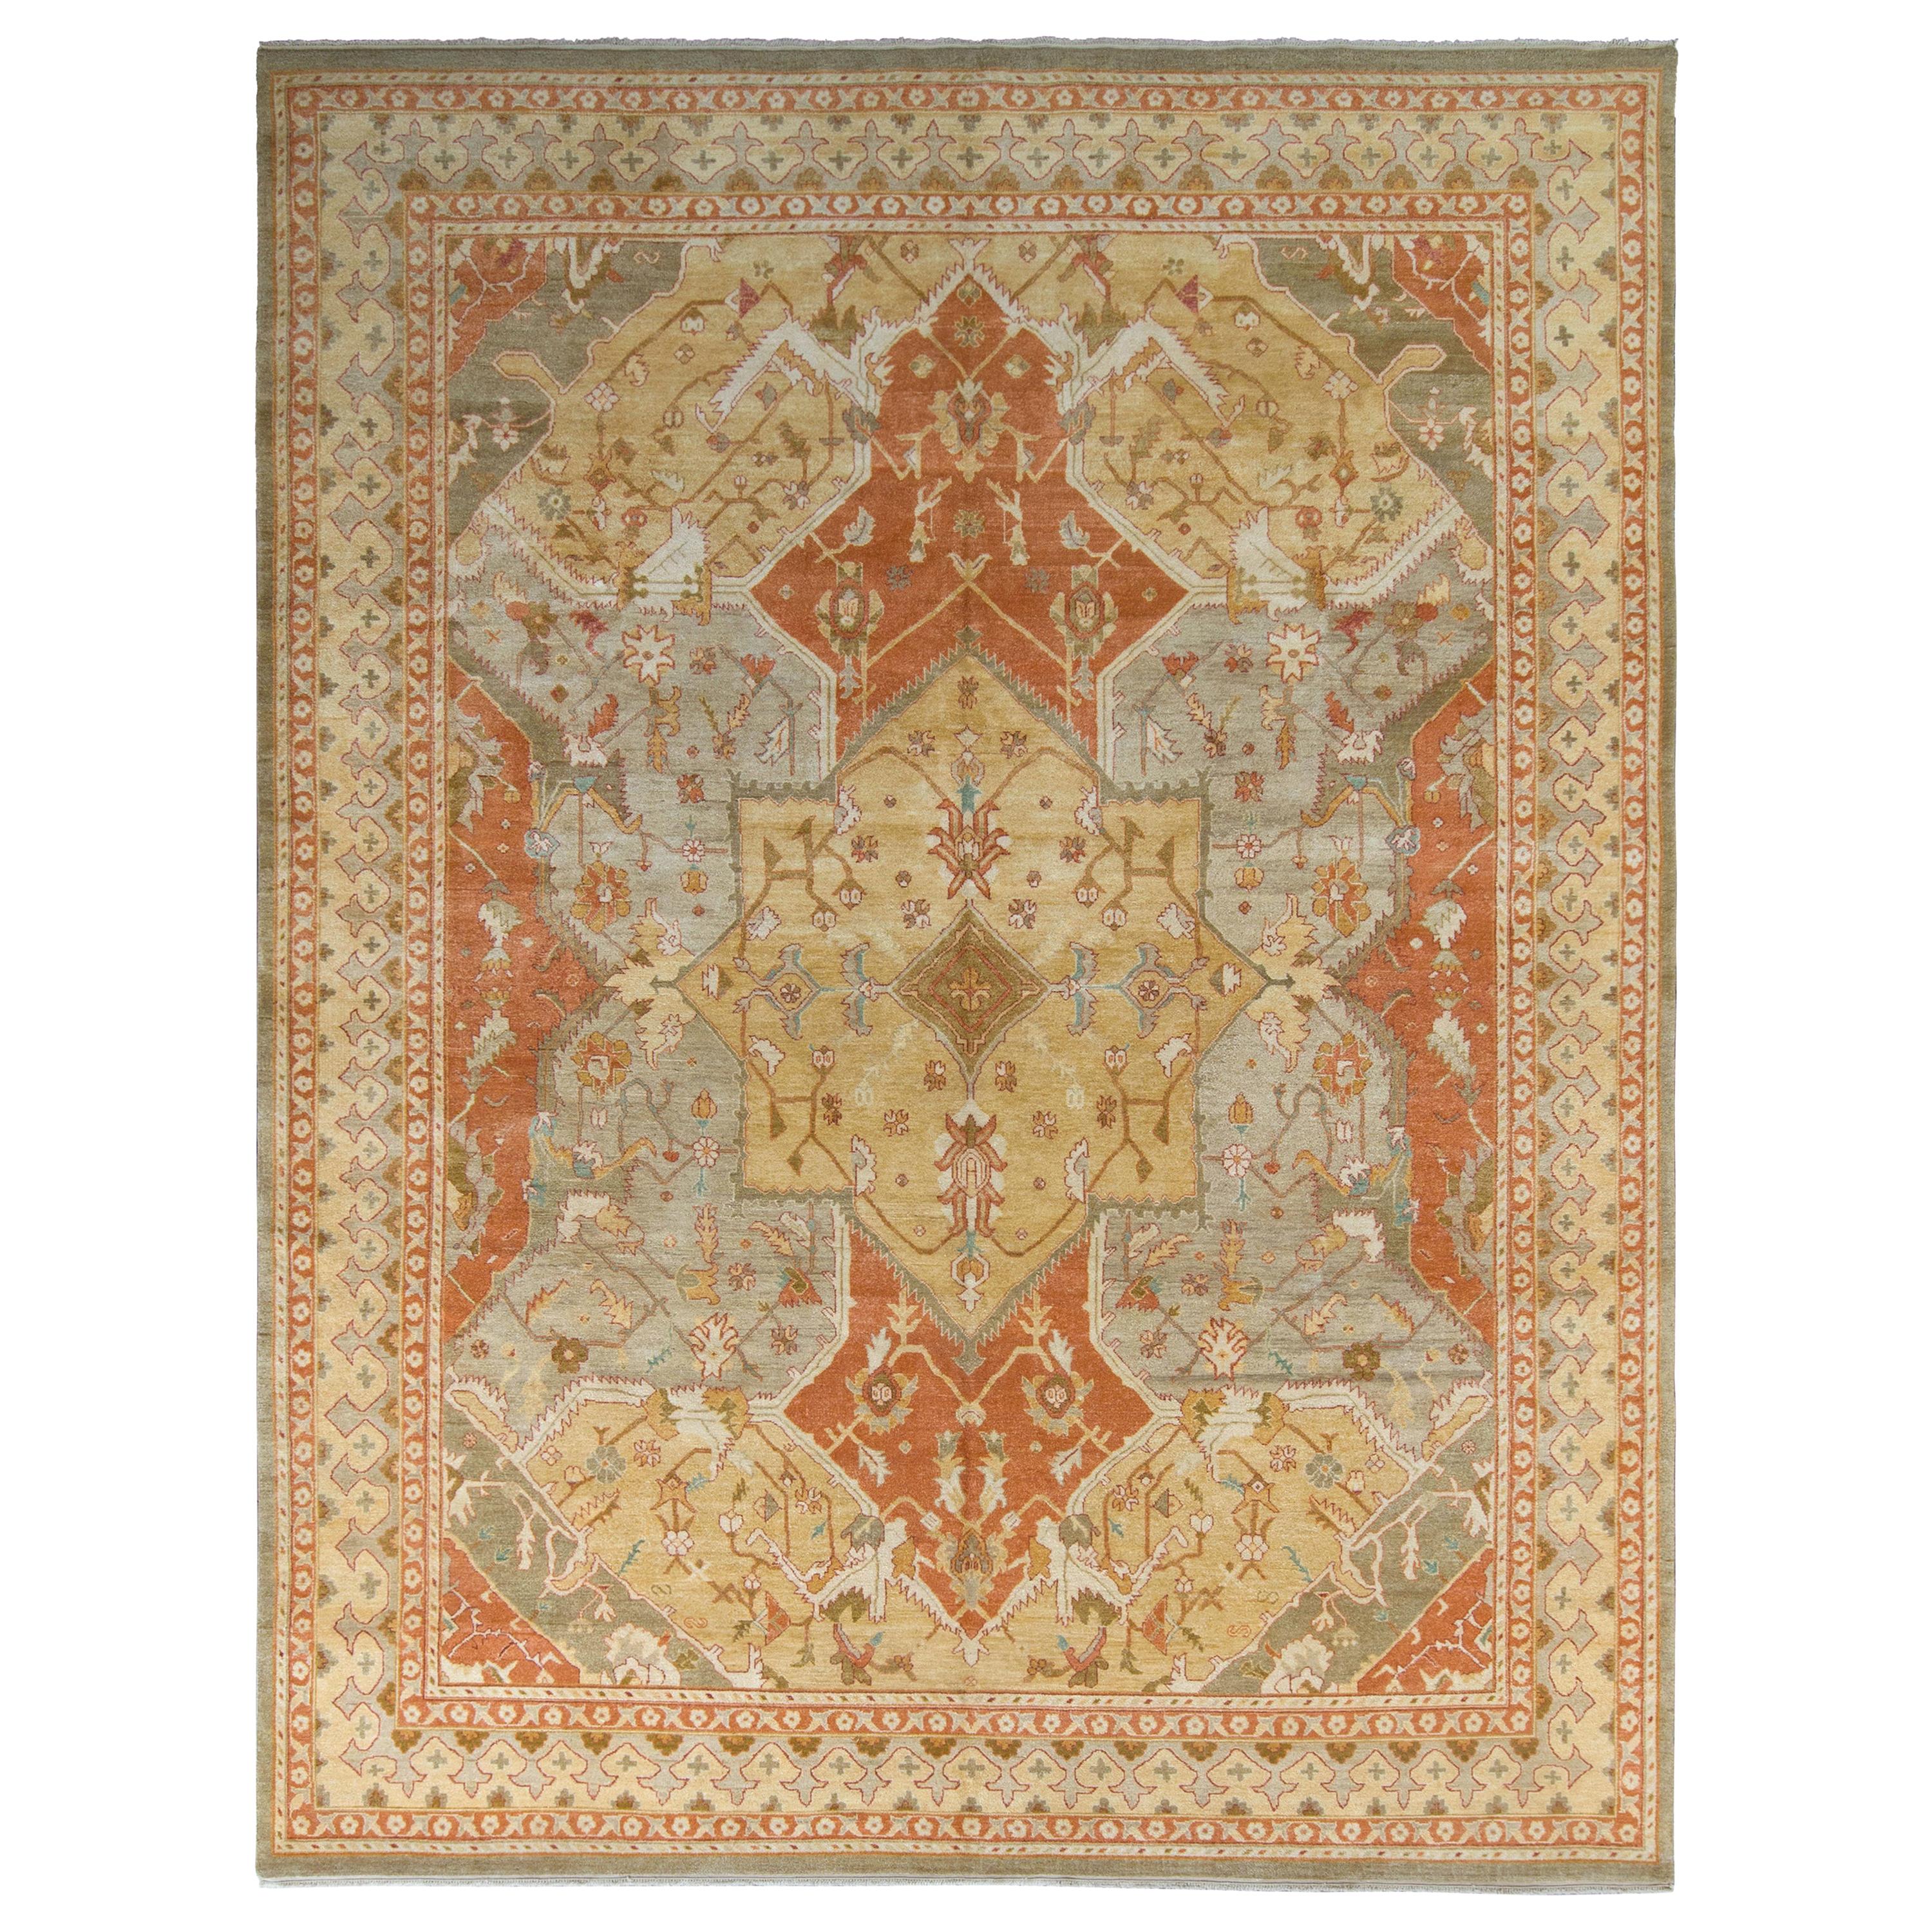 Rug & Kilims Teppich im Polonaise-Stil mit rotem und beige-braunem Medaillon-Muster